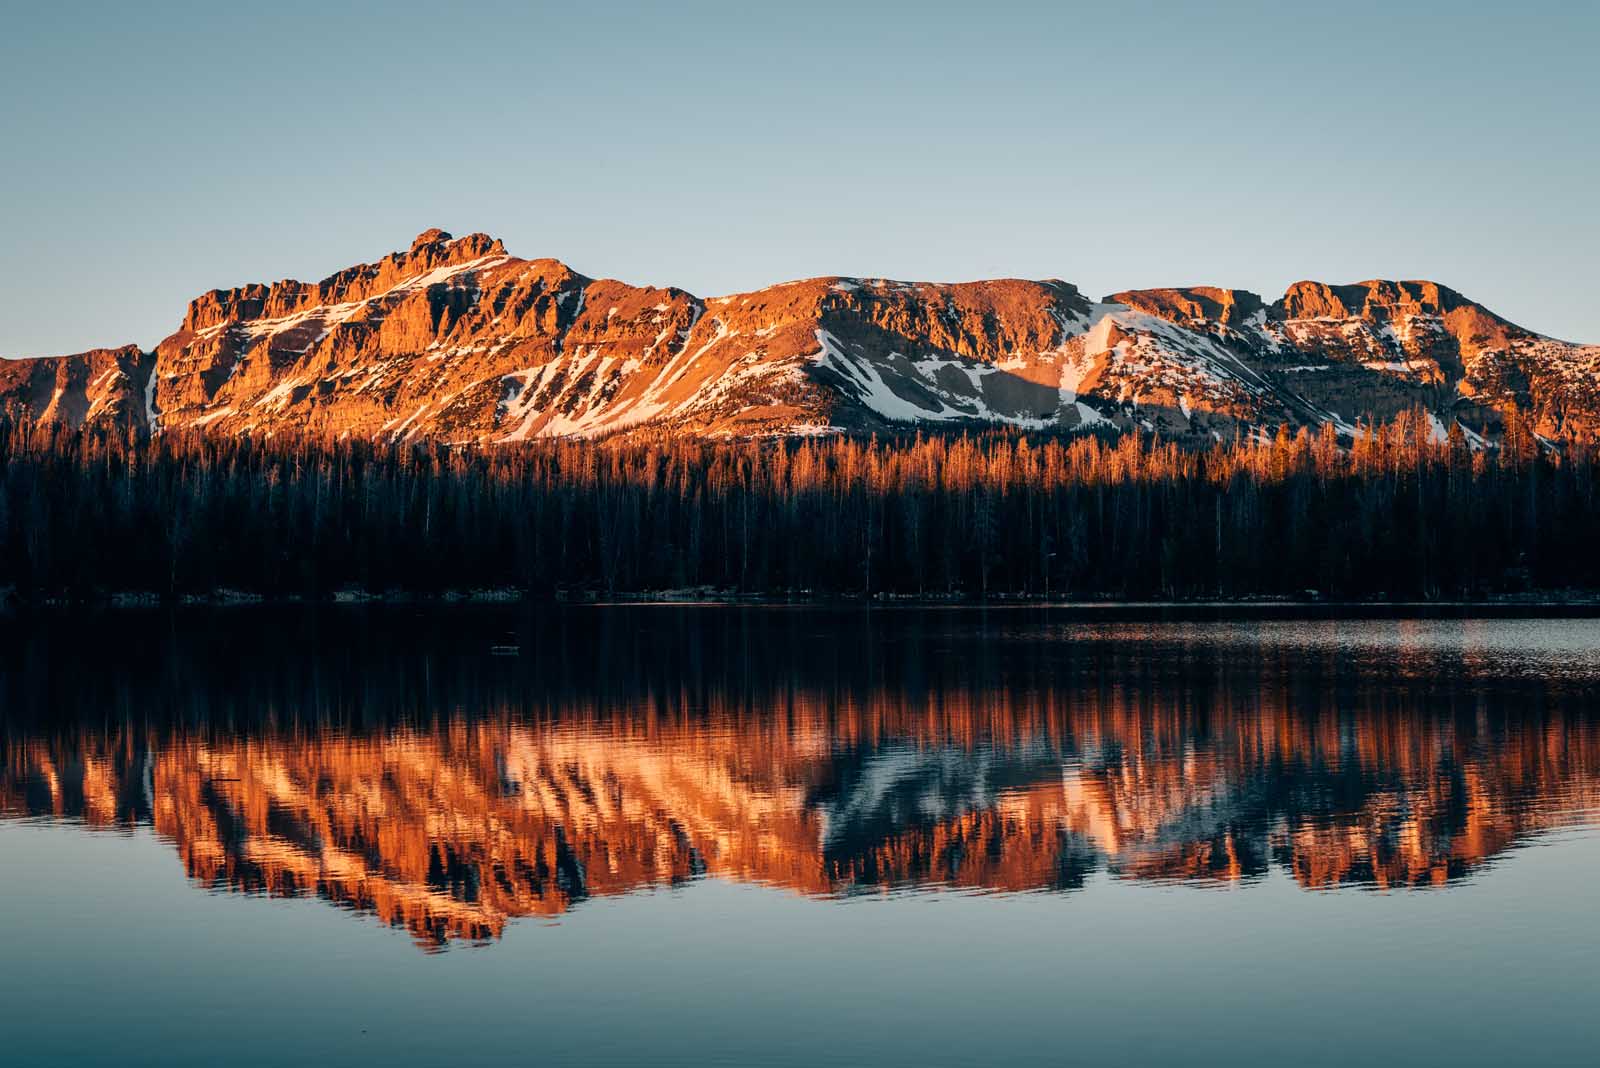 Mirror Lake, in the Uinta Mountains, Utah